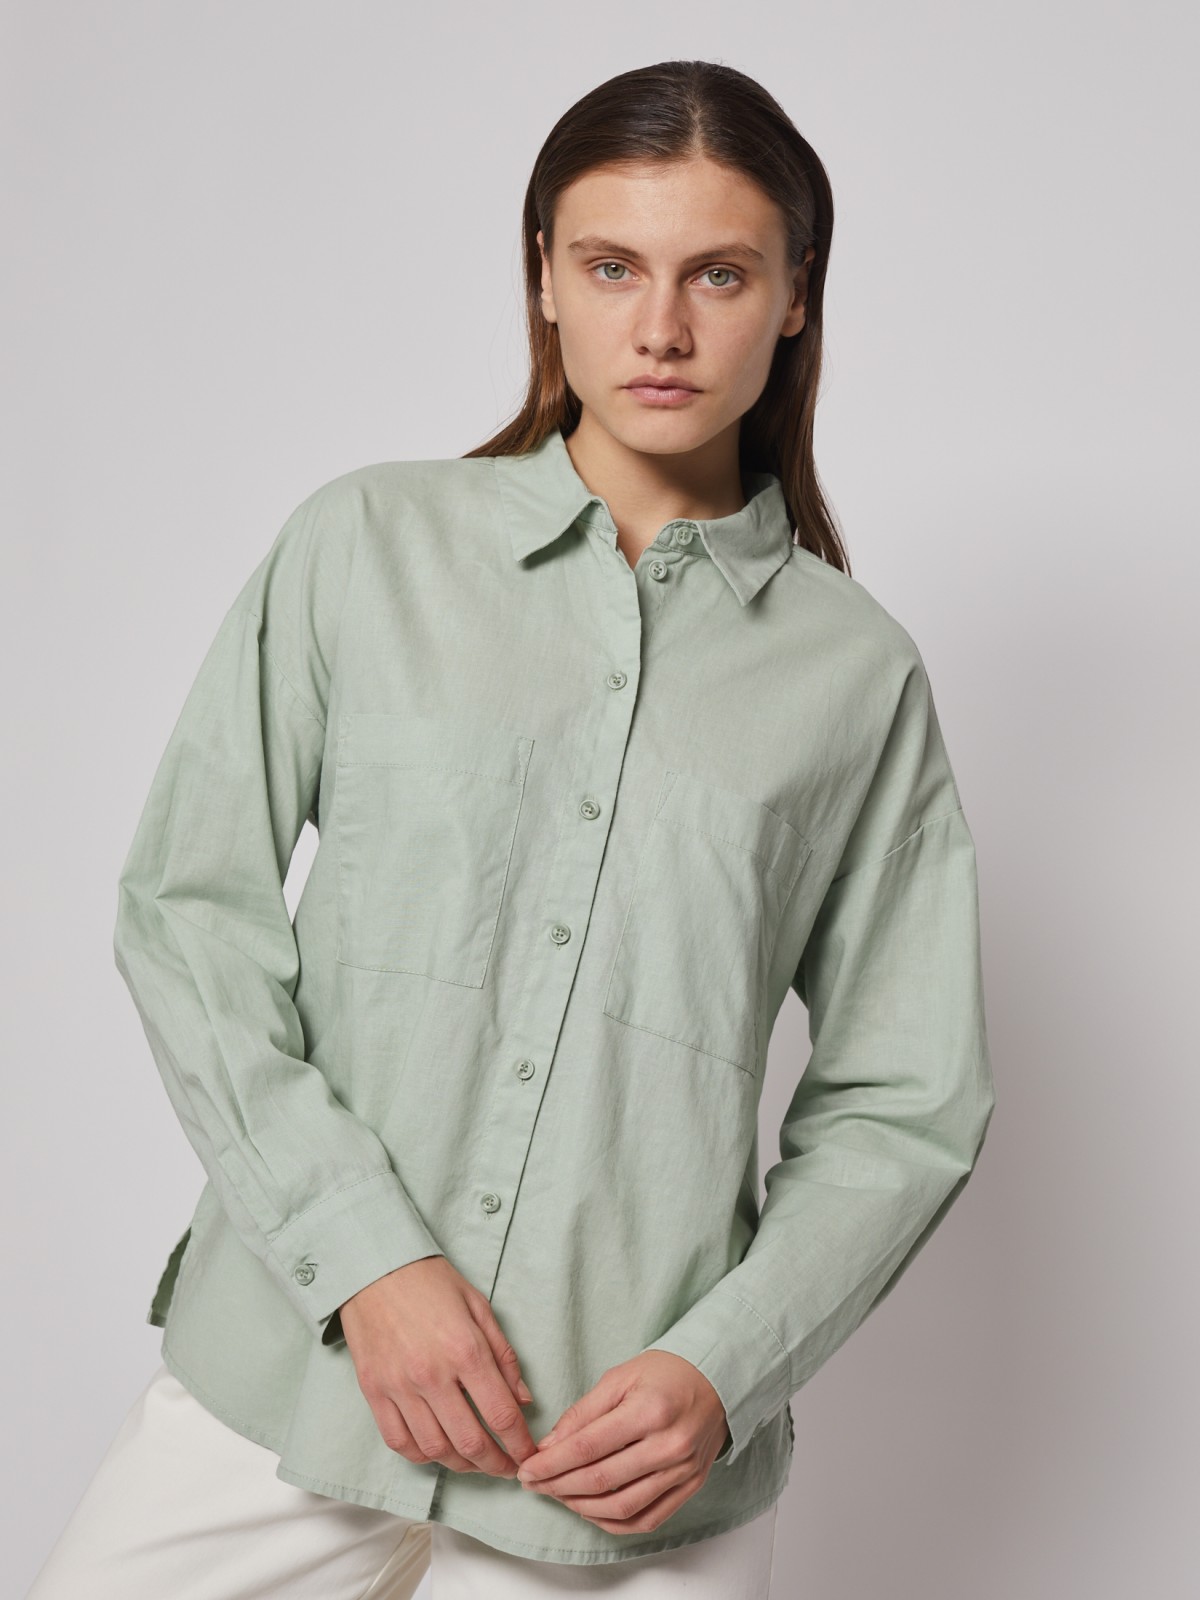 Рубашка с длинным рукавом zolla 022221191033, цвет светло-зеленый, размер XS - фото 3